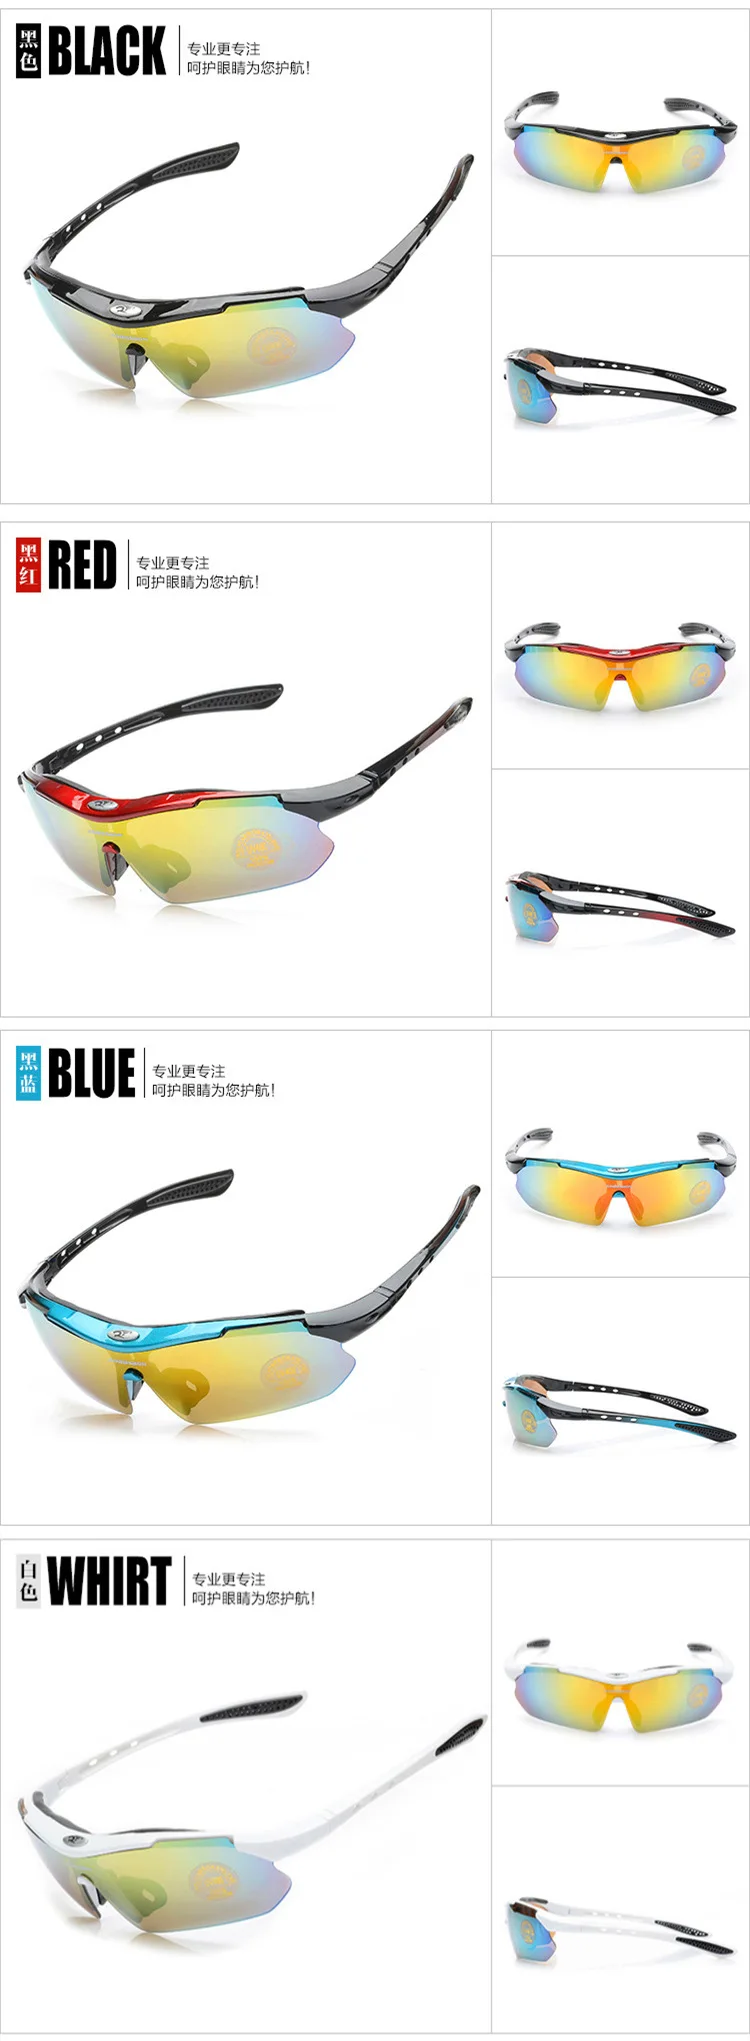 Robesbon езда на открытом воздухе очки высокой четкости близорукость солнцезащитные спортивные очки сменные линзы/0089 шт